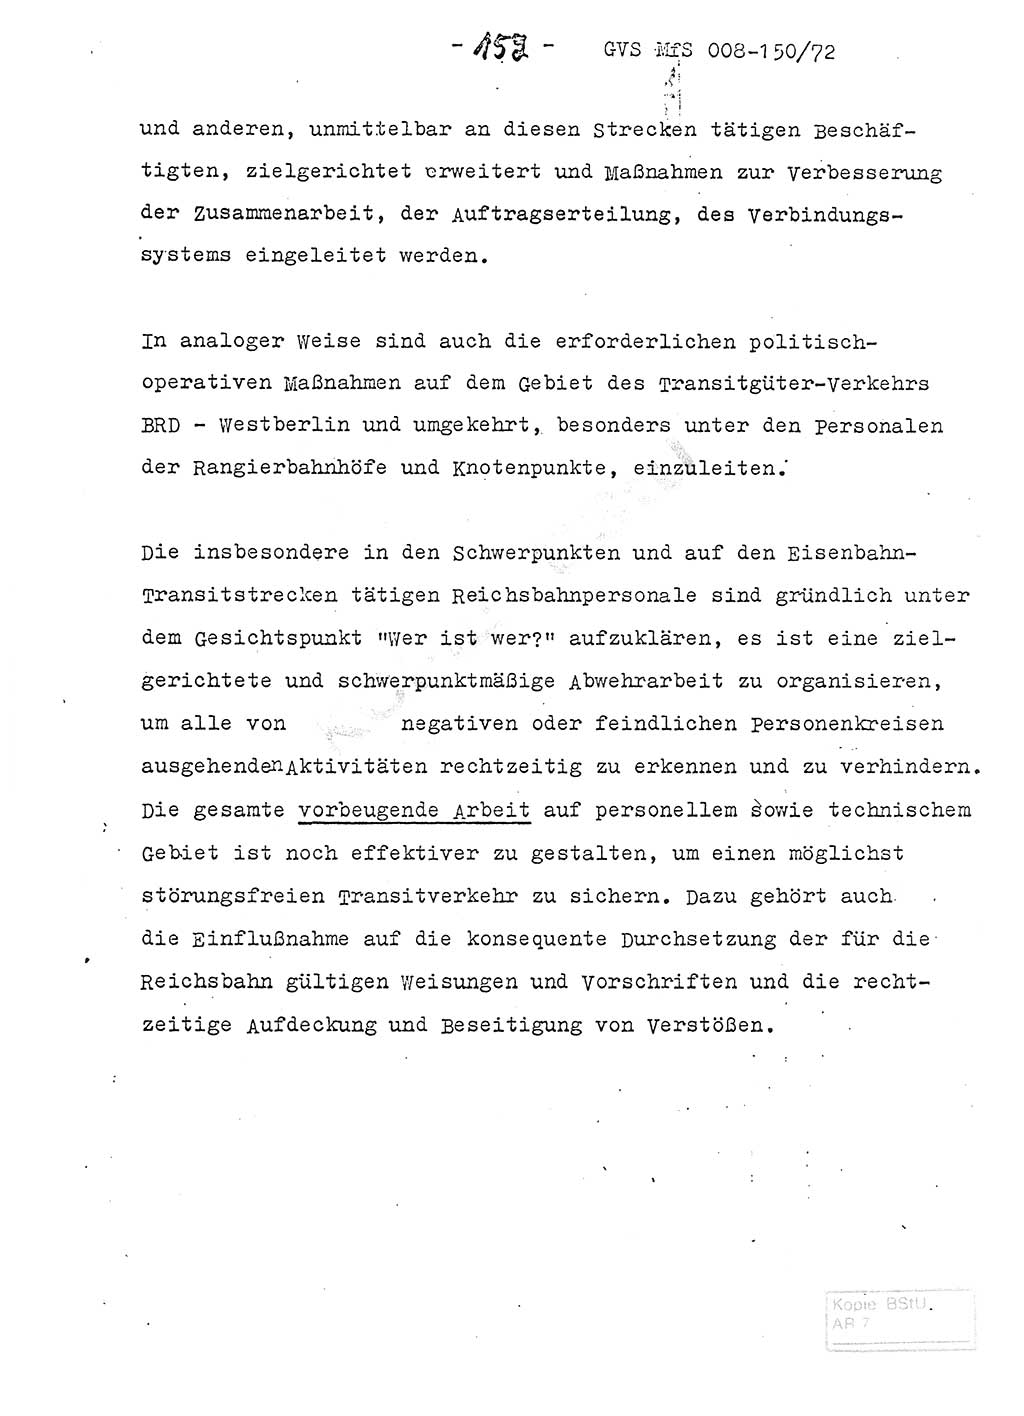 Referat (Entwurf) des Genossen Minister (Generaloberst Erich Mielke) auf der Dienstkonferenz 1972, Ministerium für Staatssicherheit (MfS) [Deutsche Demokratische Republik (DDR)], Der Minister, Geheime Verschlußsache (GVS) 008-150/72, Berlin 25.2.1972, Seite 152 (Ref. Entw. DK MfS DDR Min. GVS 008-150/72 1972, S. 152)